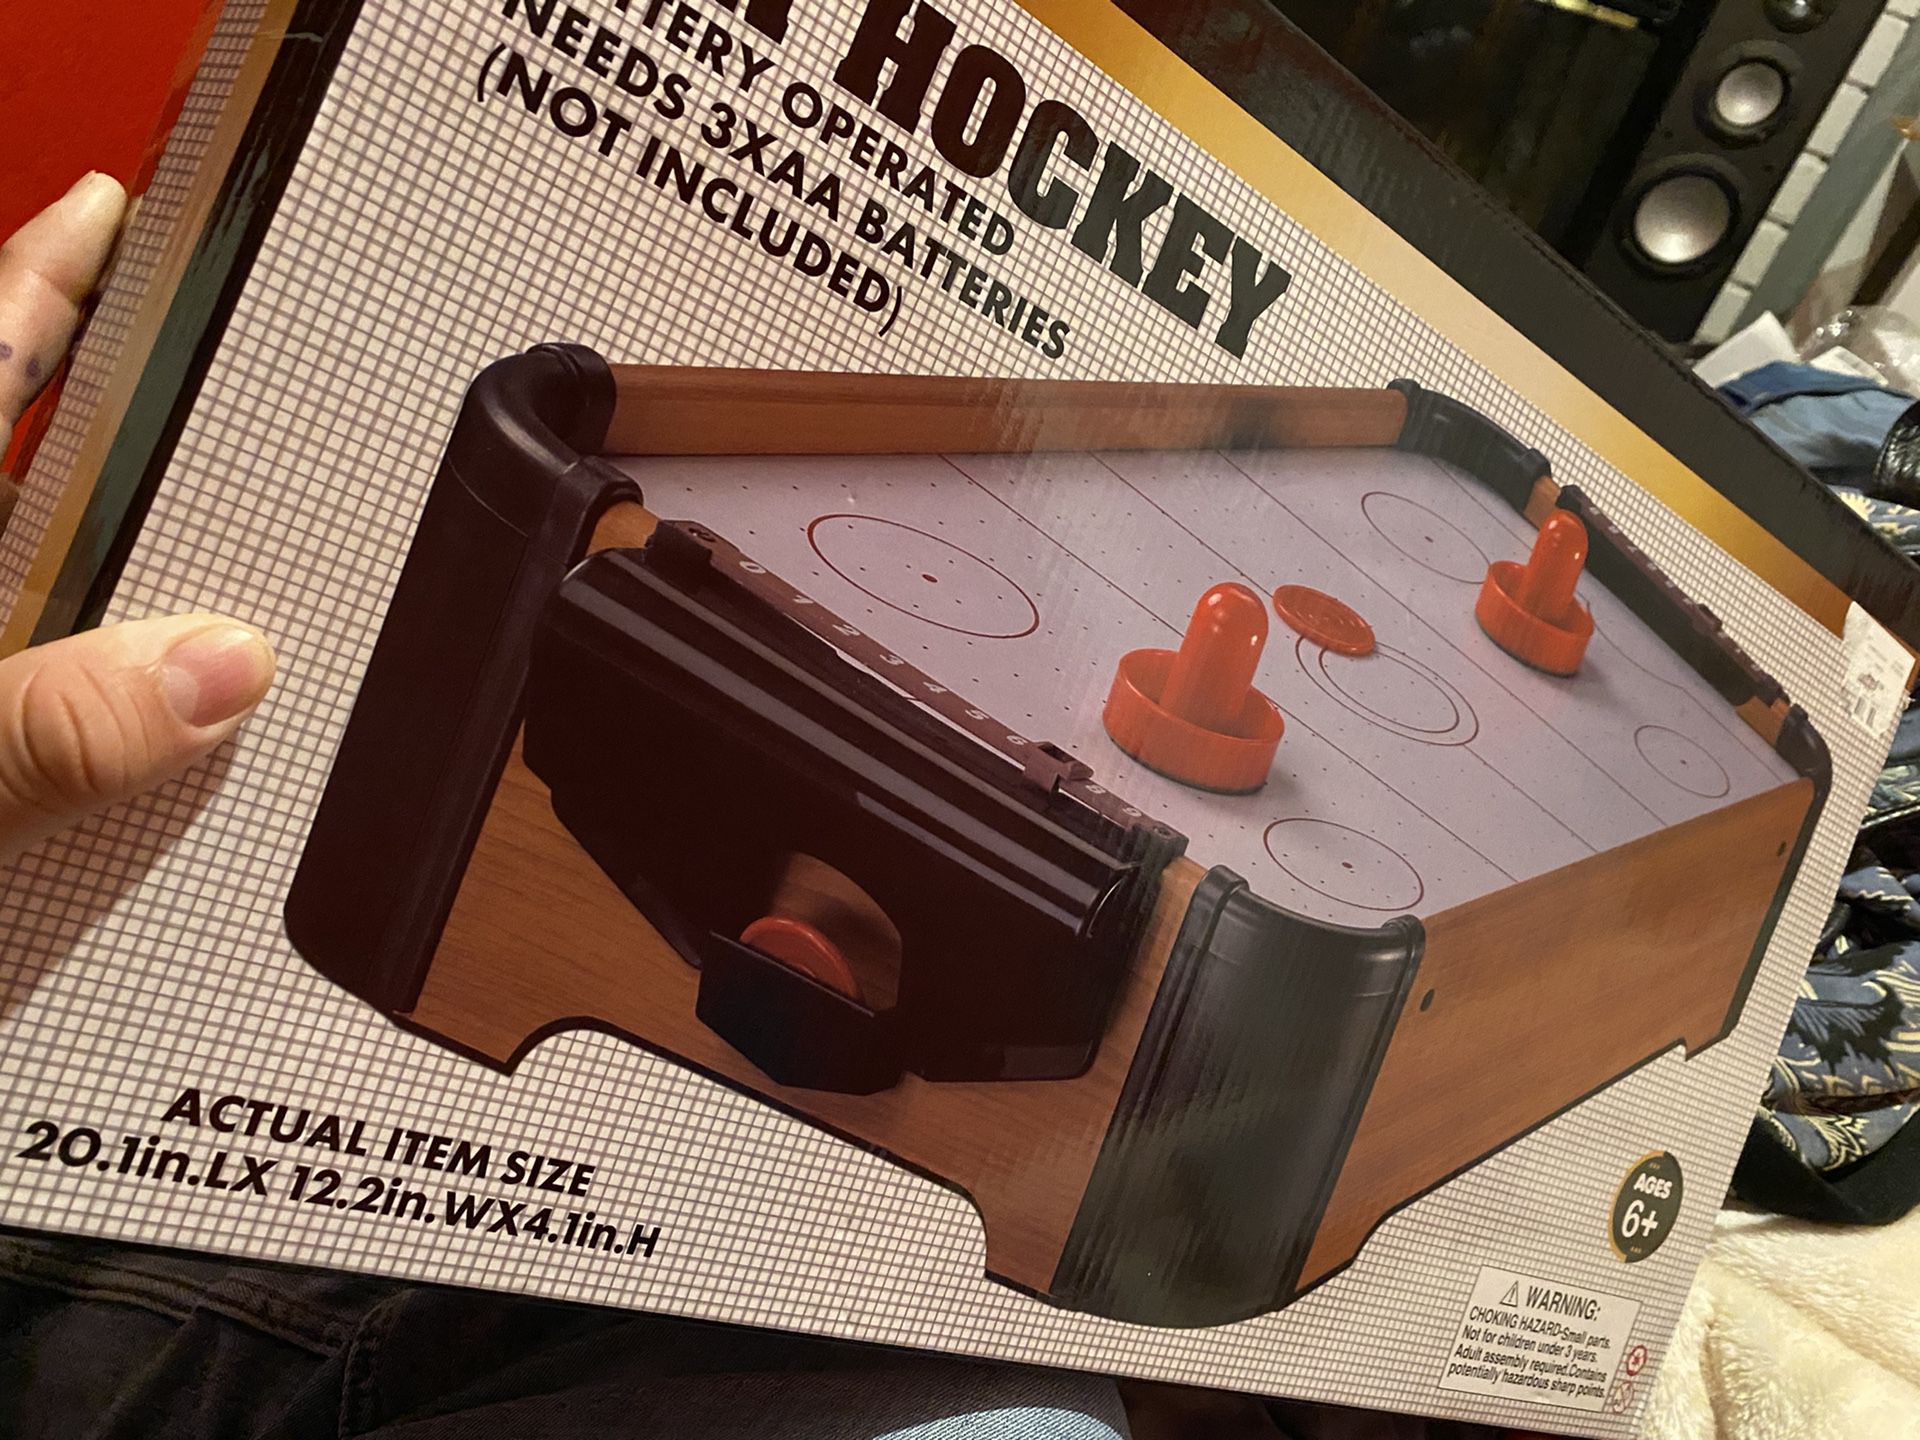 $10 air hockey